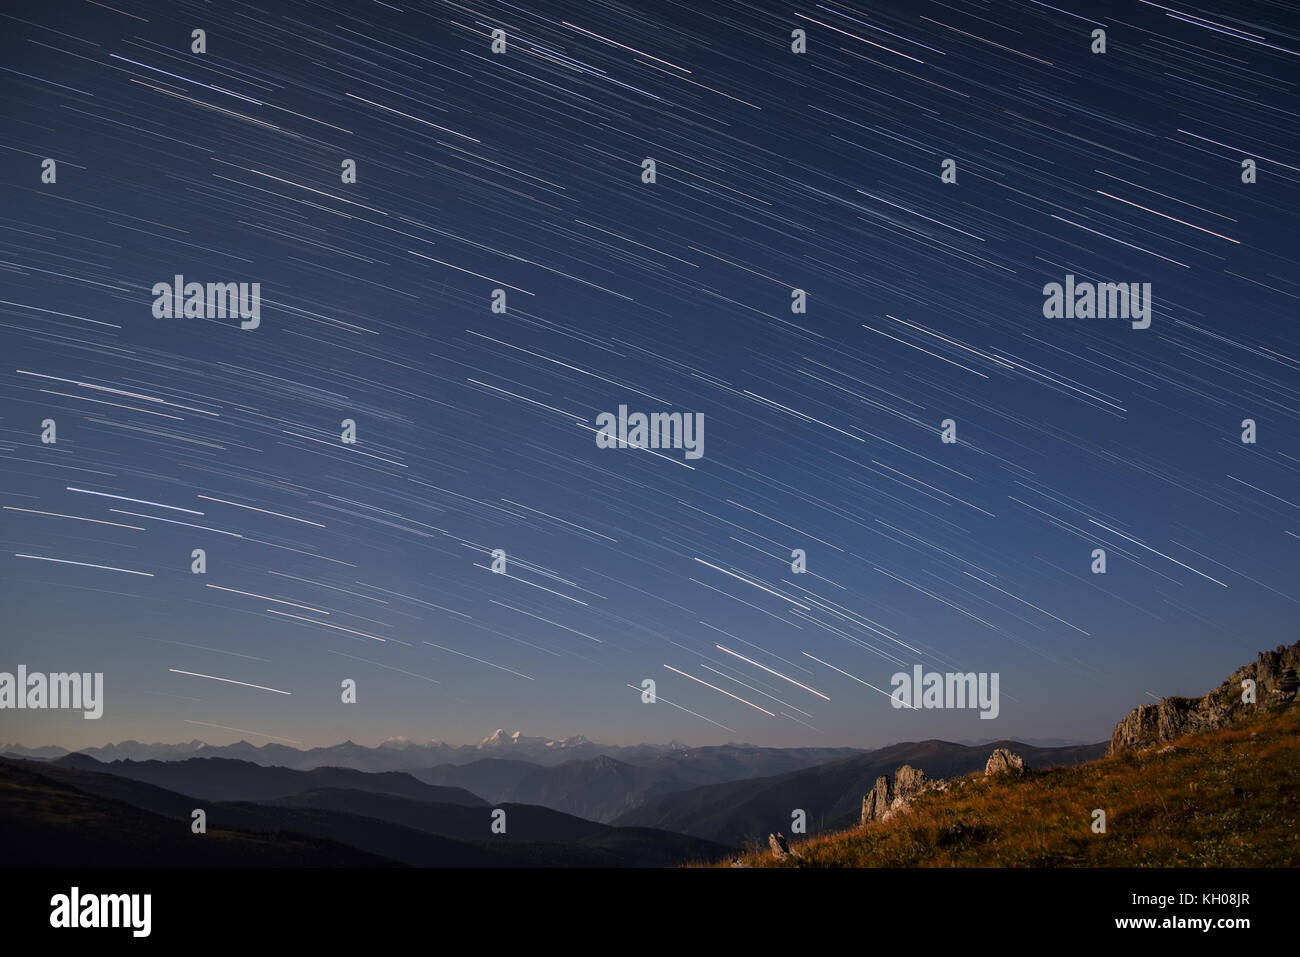 Hermoso paisaje nocturno con trazas de estrellas en el cielo nocturno con un telón de fondo de montañas, rodada en las altas montañas con un tiempo de exposición Foto de stock